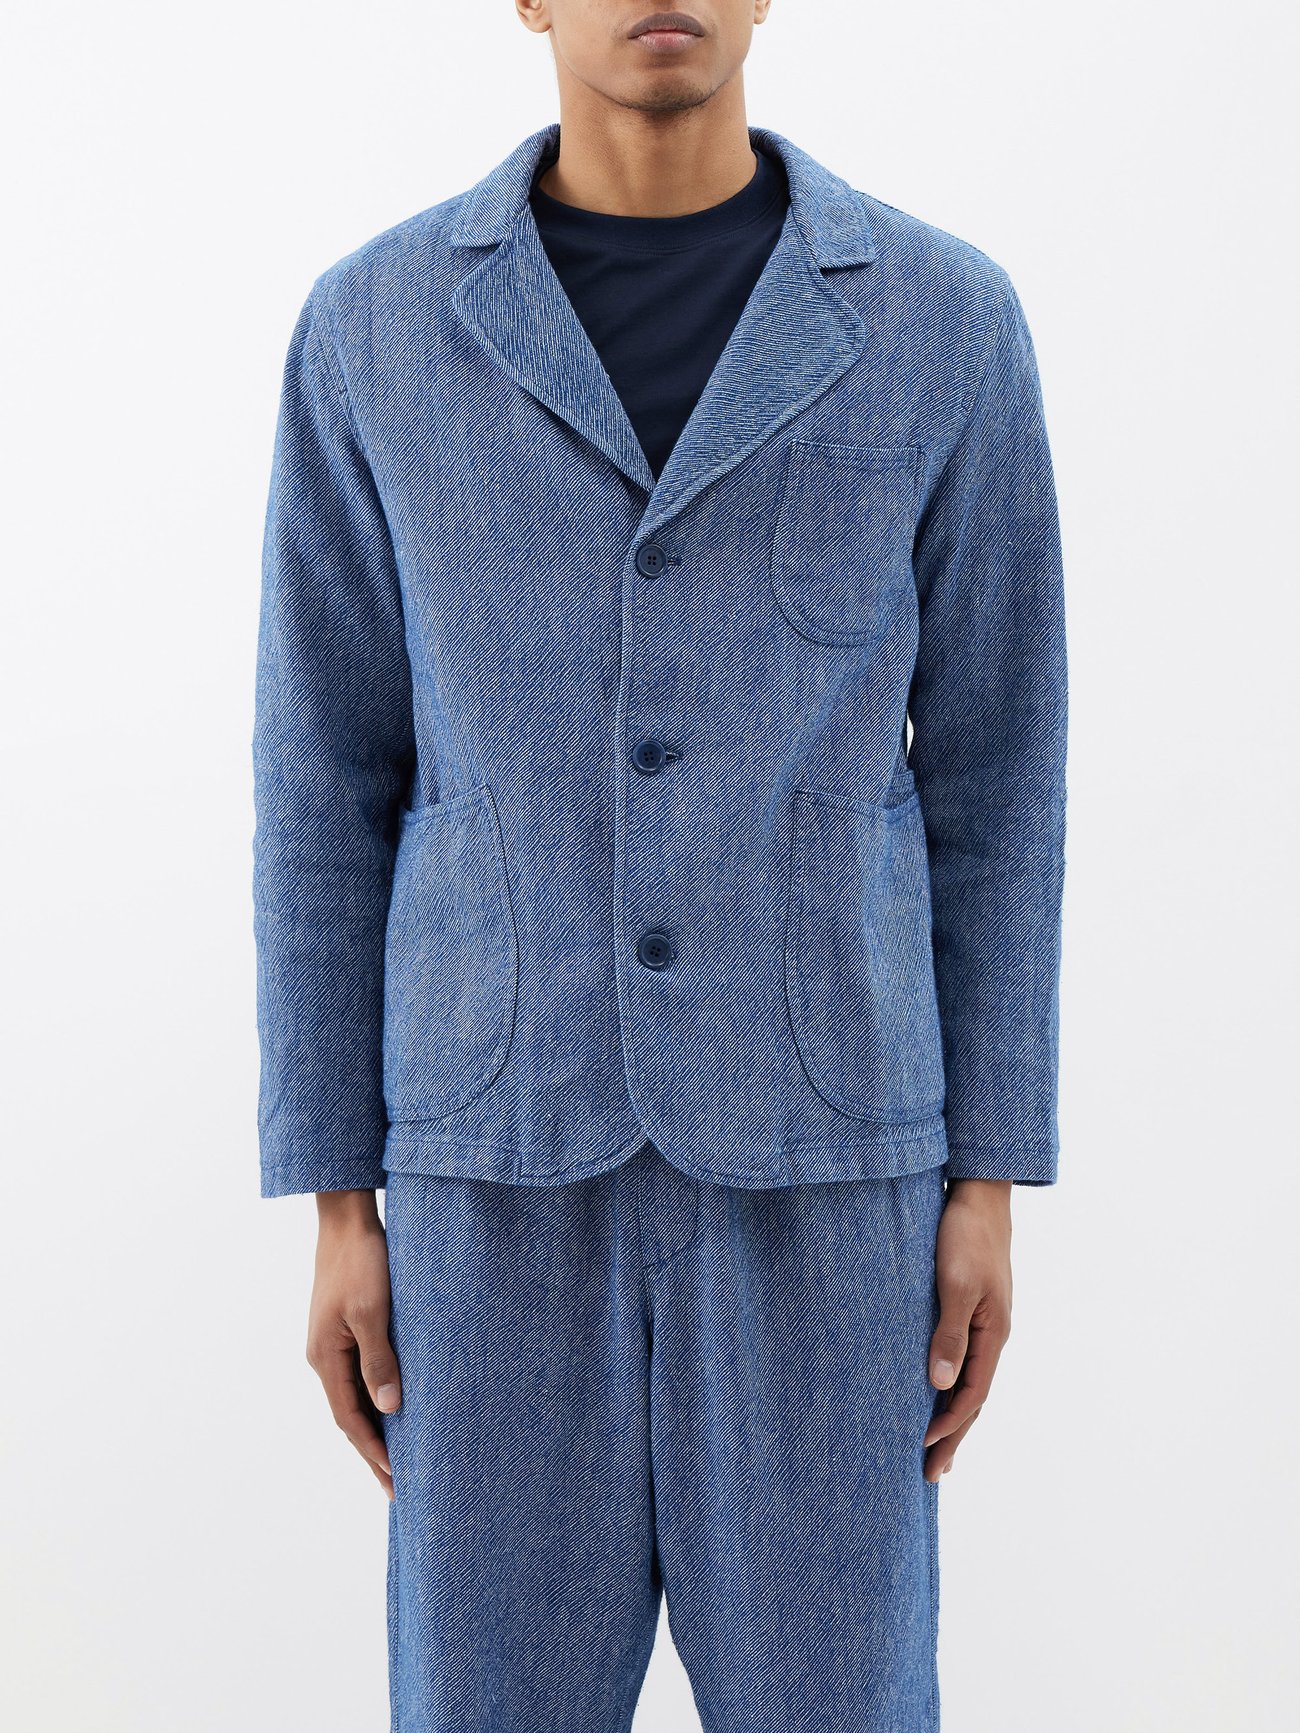 matchesfashion.com | Scuttlers patch-pocket linen-blend suit jacket